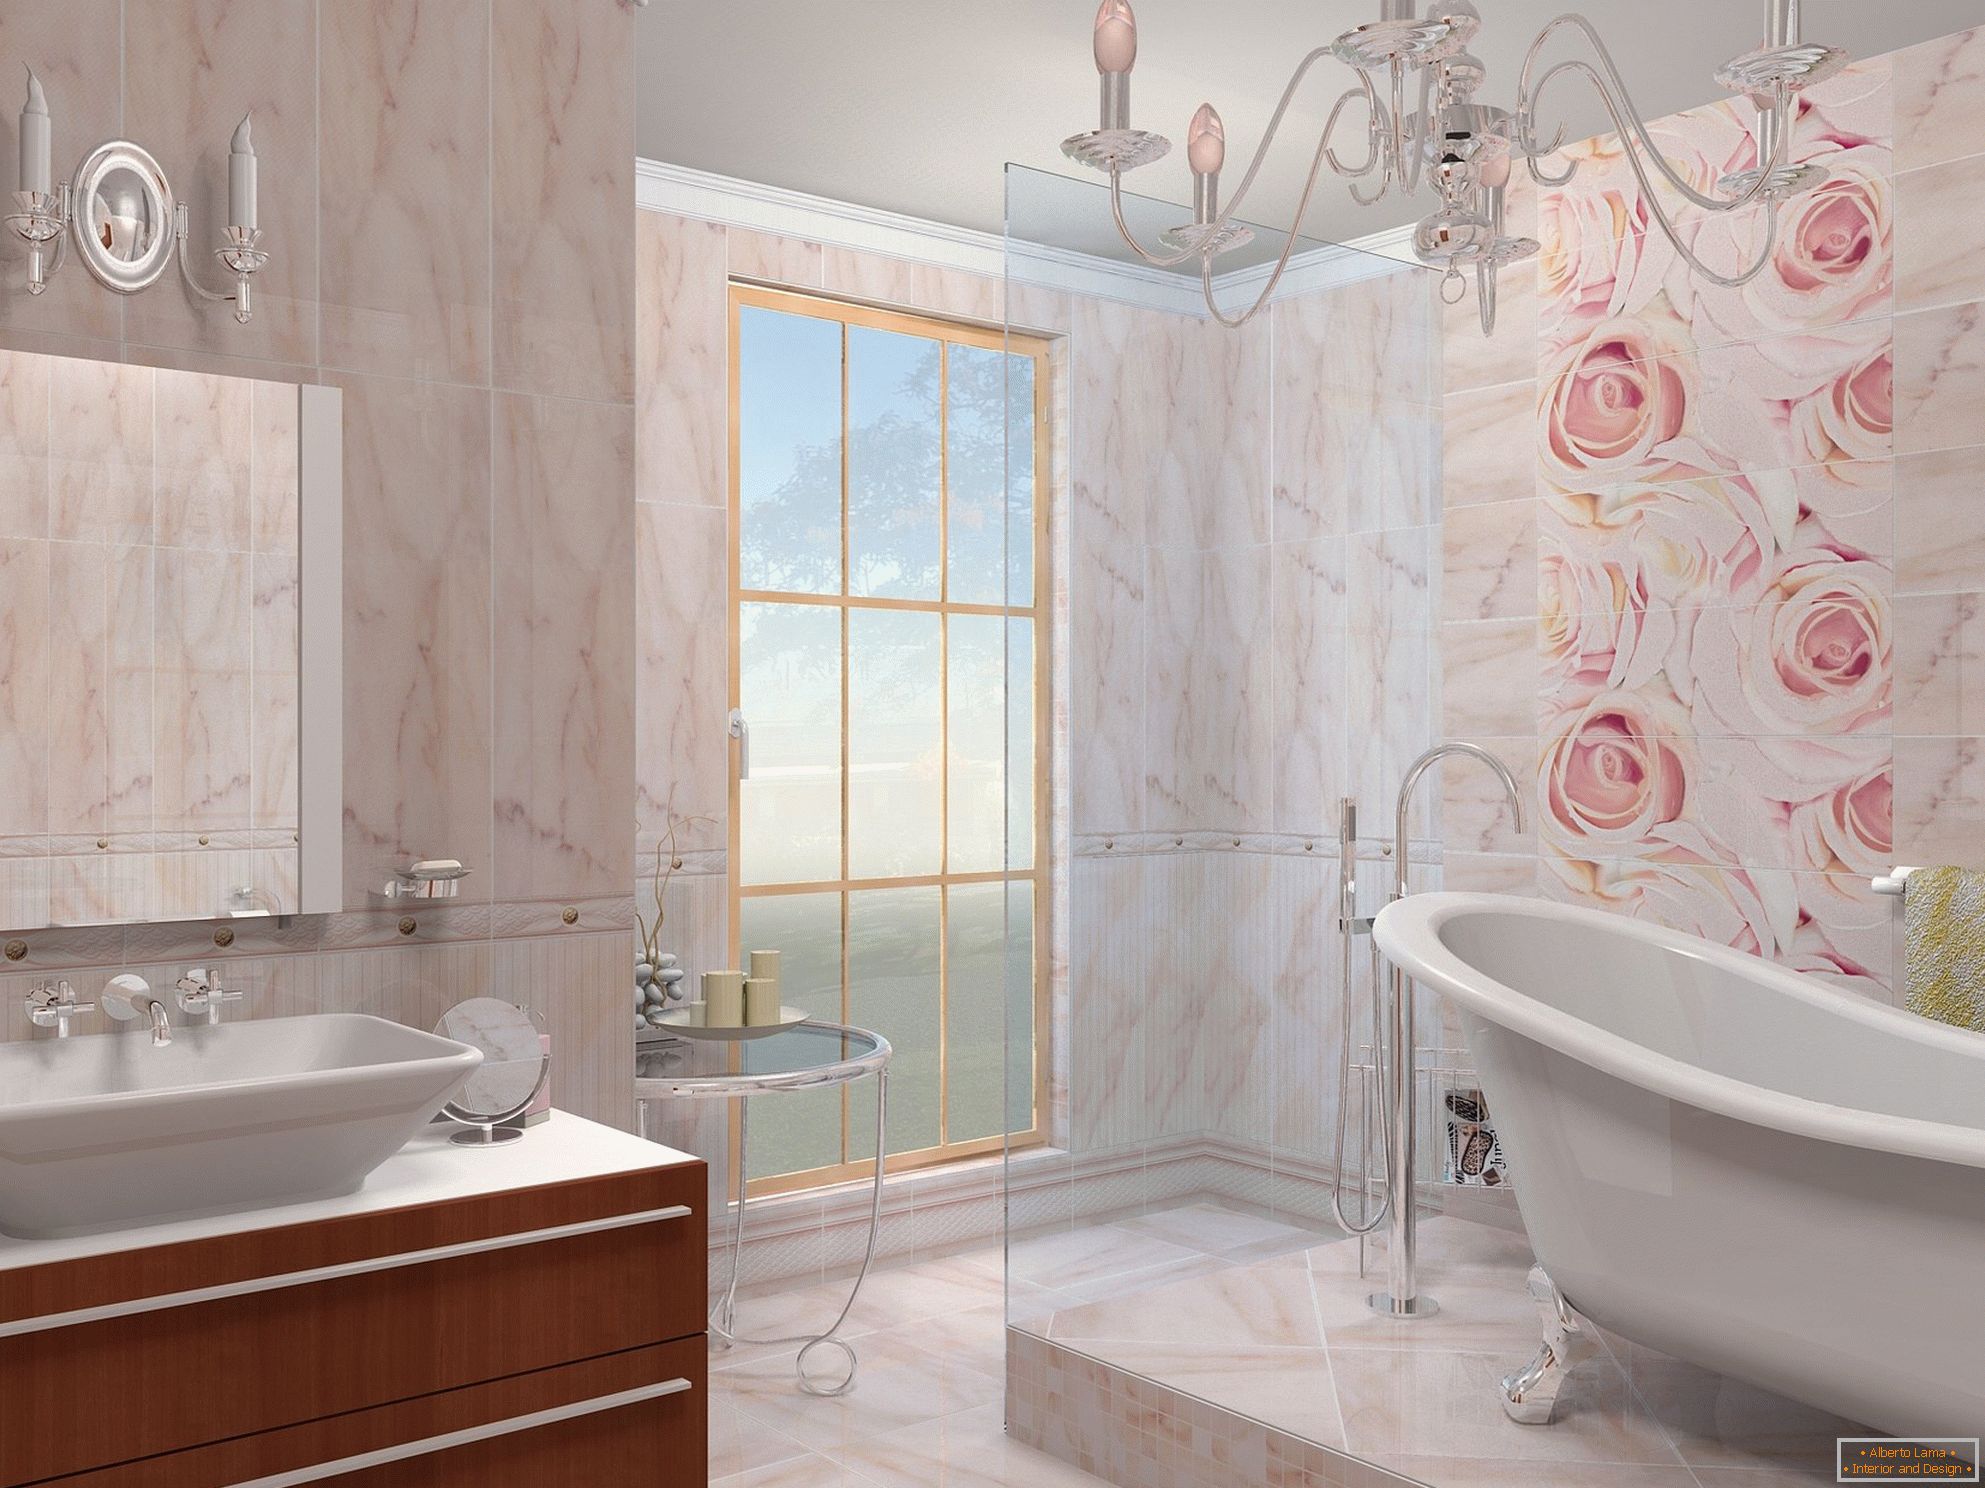 La combinación de beige y rosa en el diseño del baño